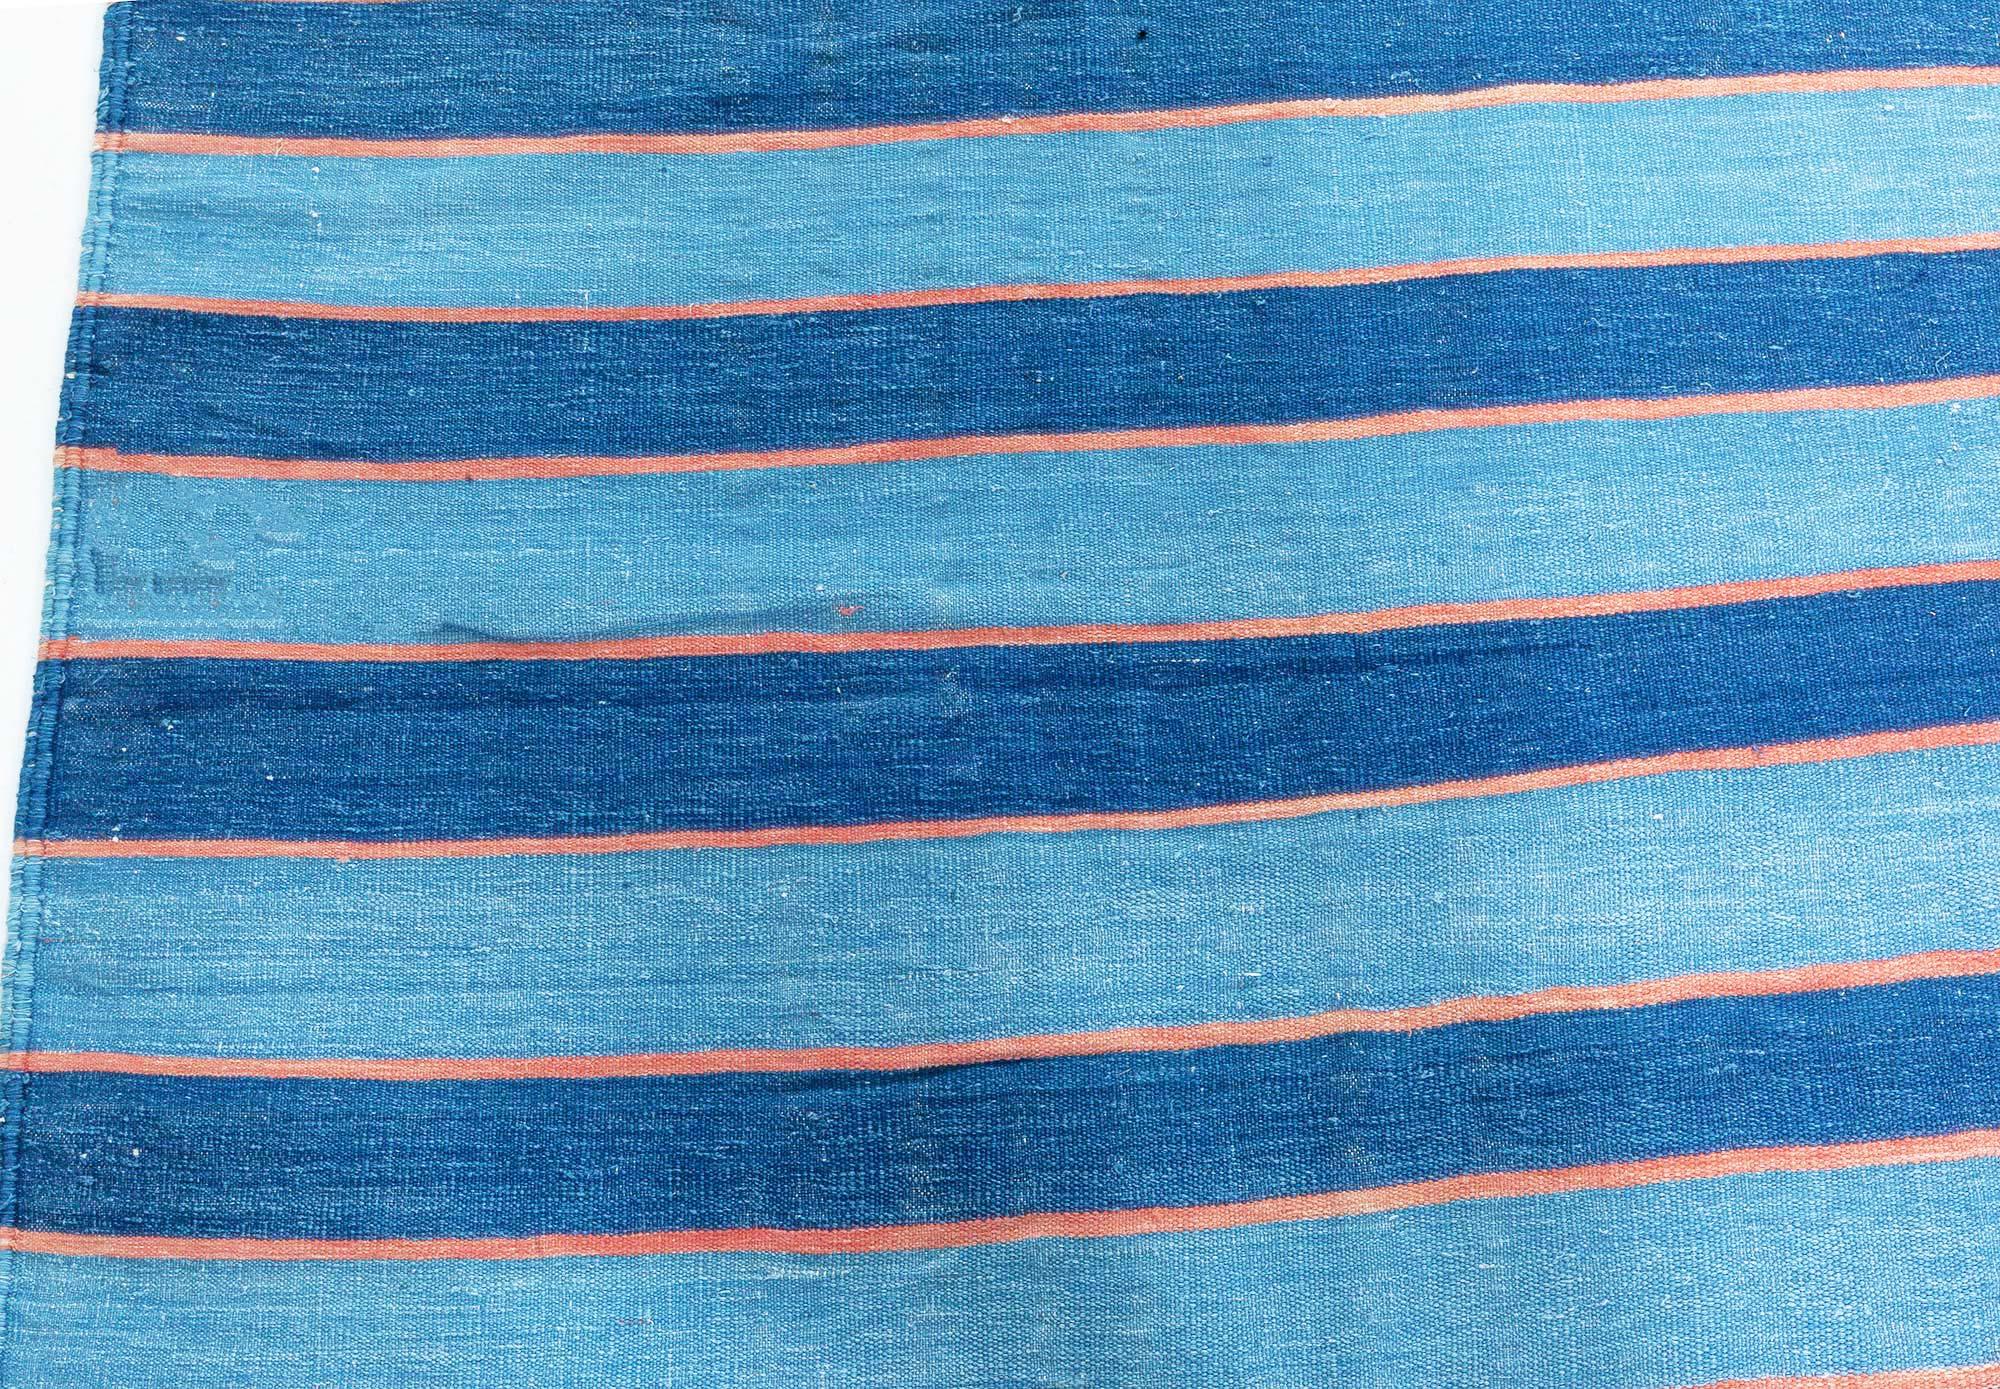 Vintage Indian Dhurrie gestreifter blauer Teppich
Größe: 15'5